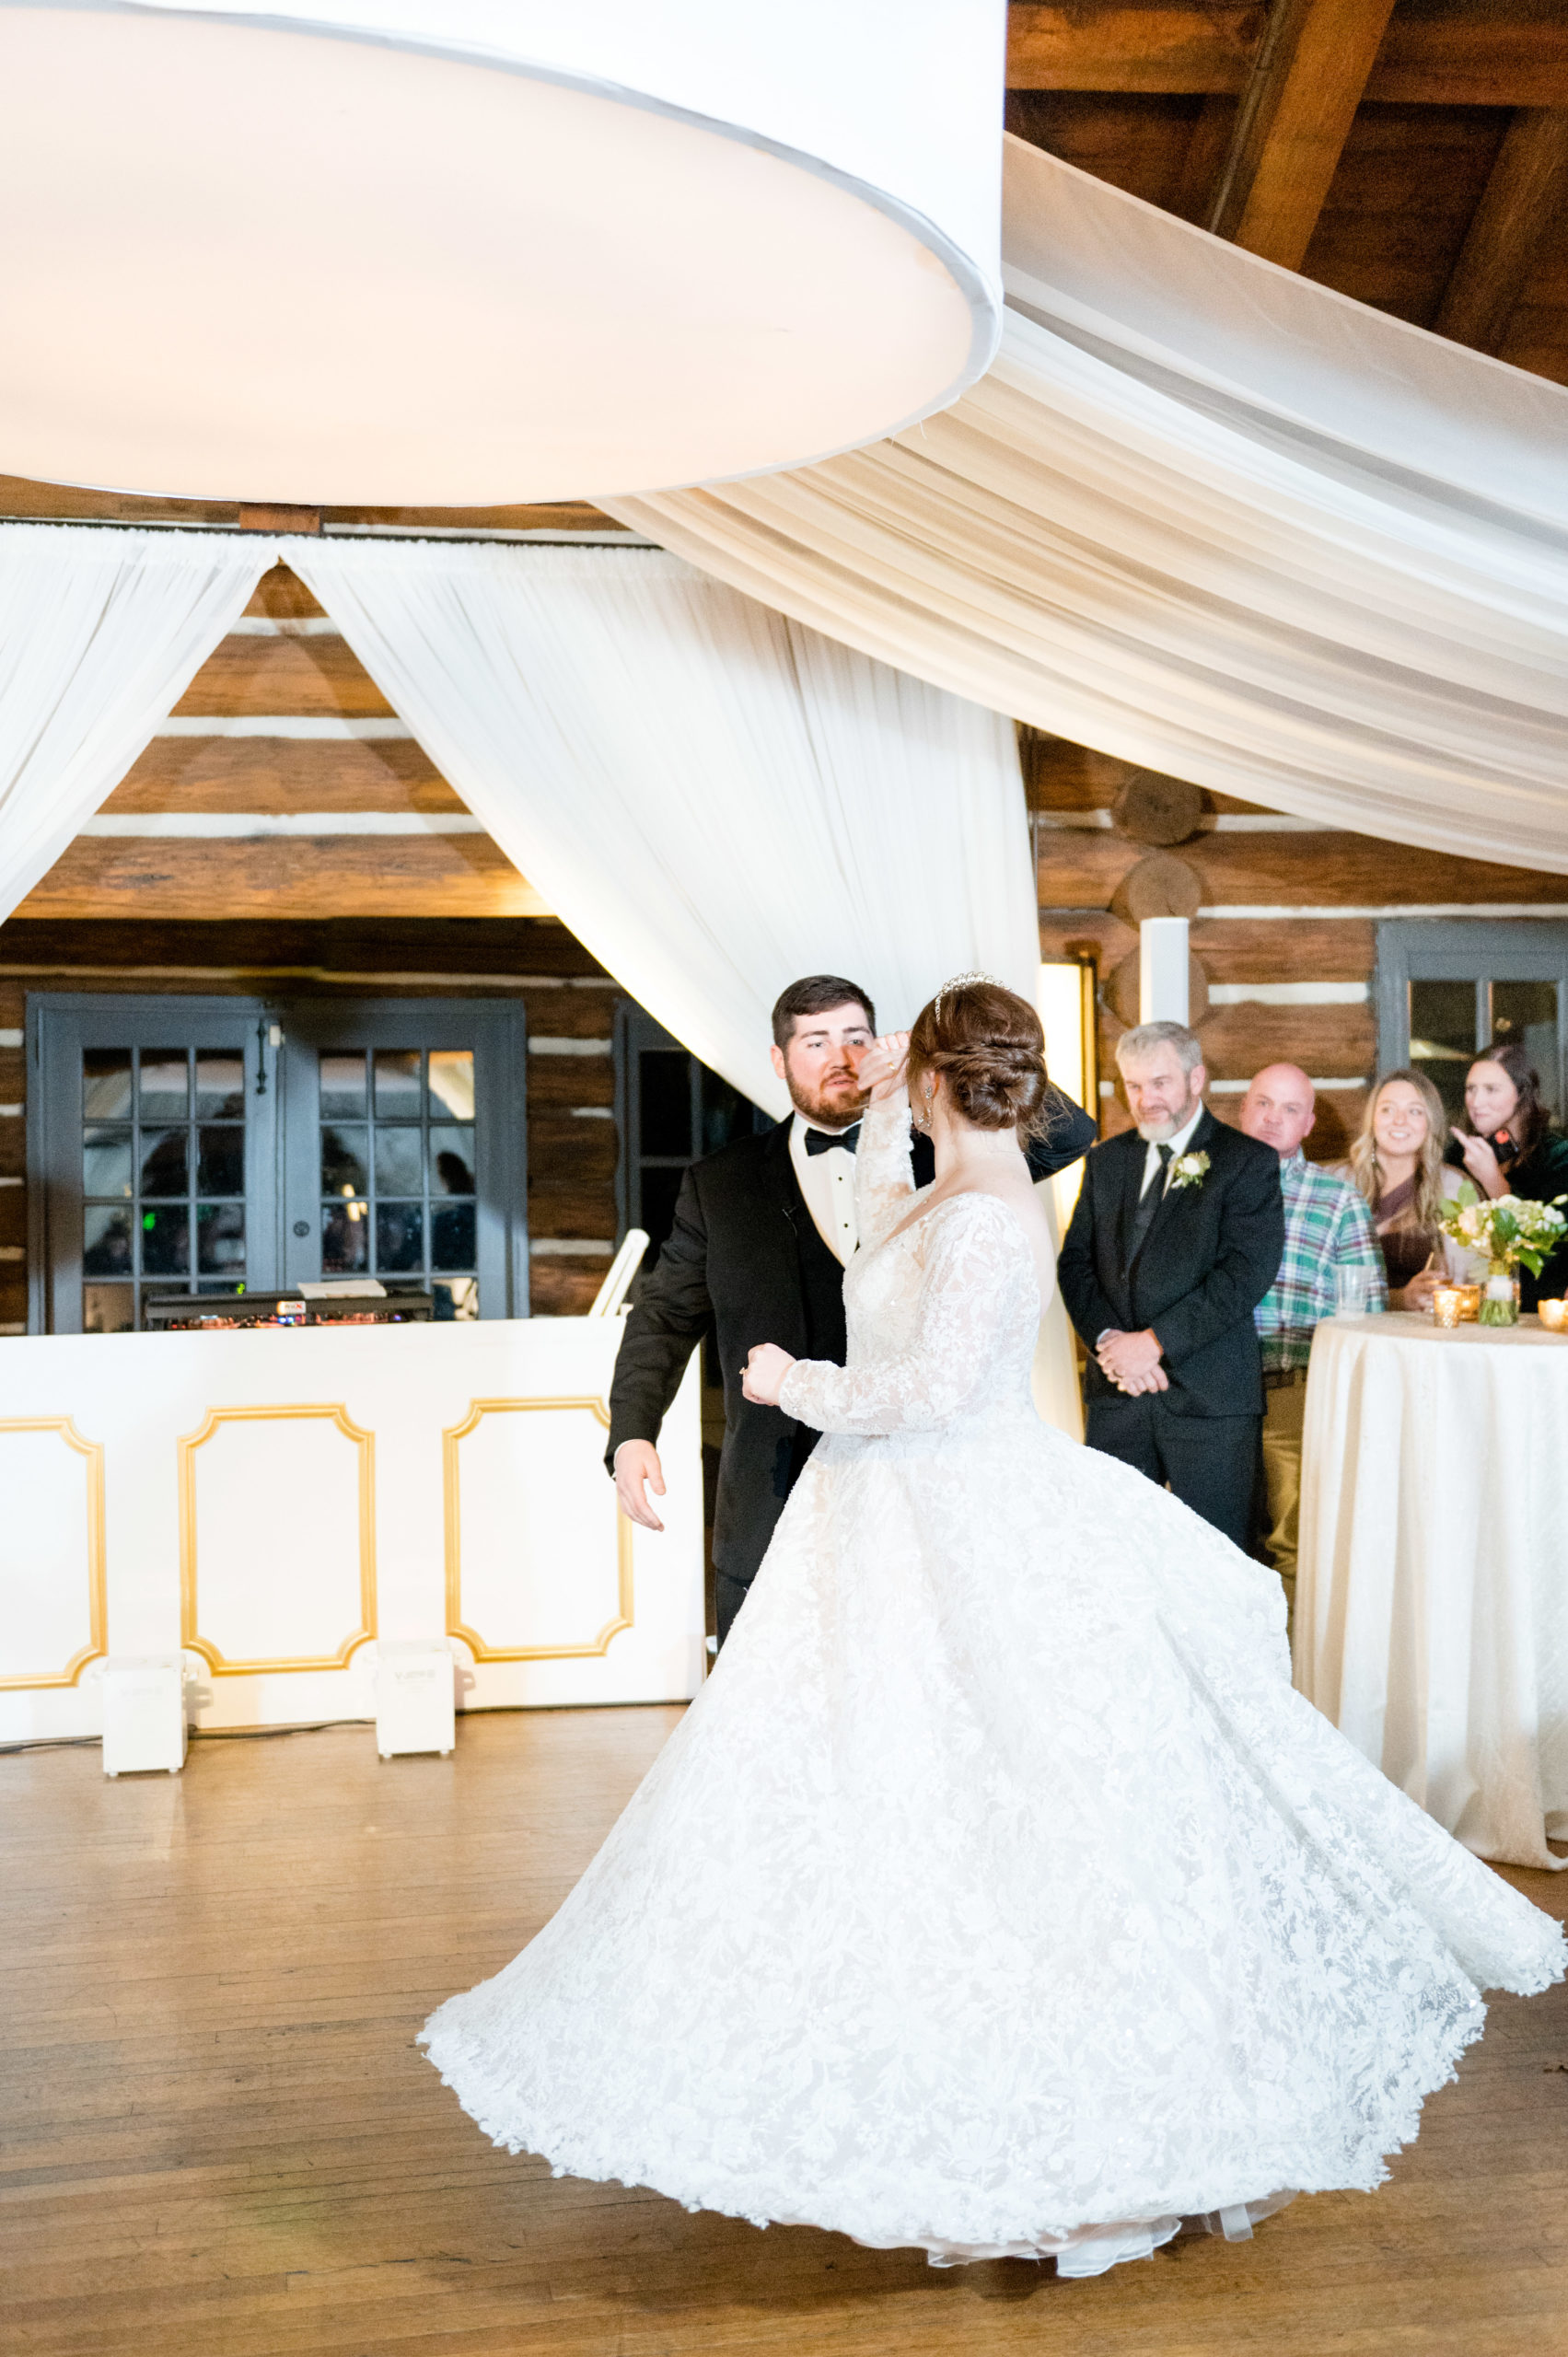 Groom twirls bride during first dance.